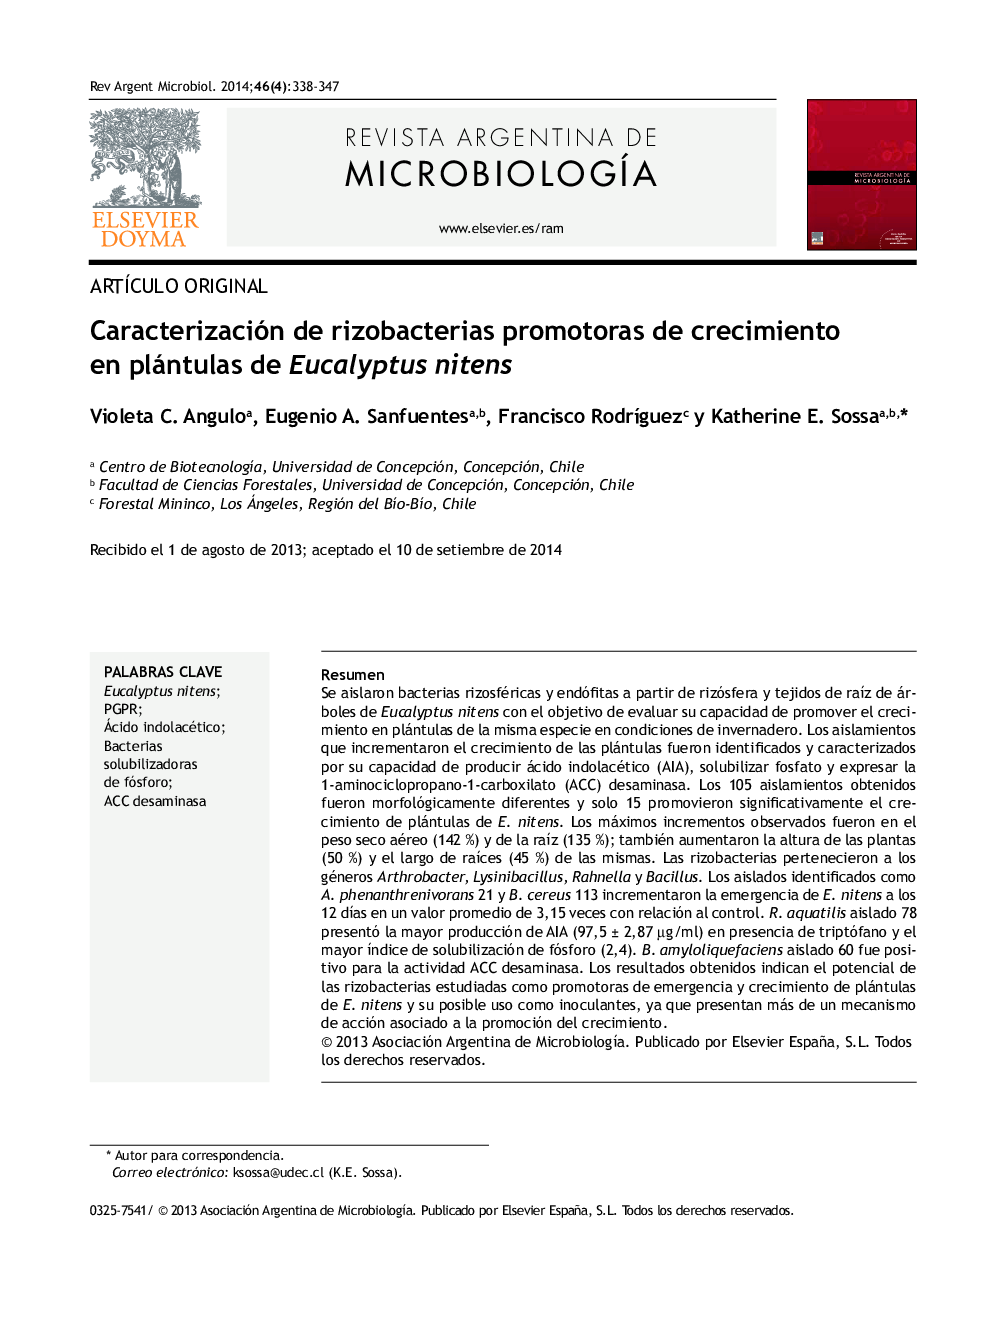 Caracterización de rizobacterias promotoras de crecimiento en plántulas de Eucalyptus nitens